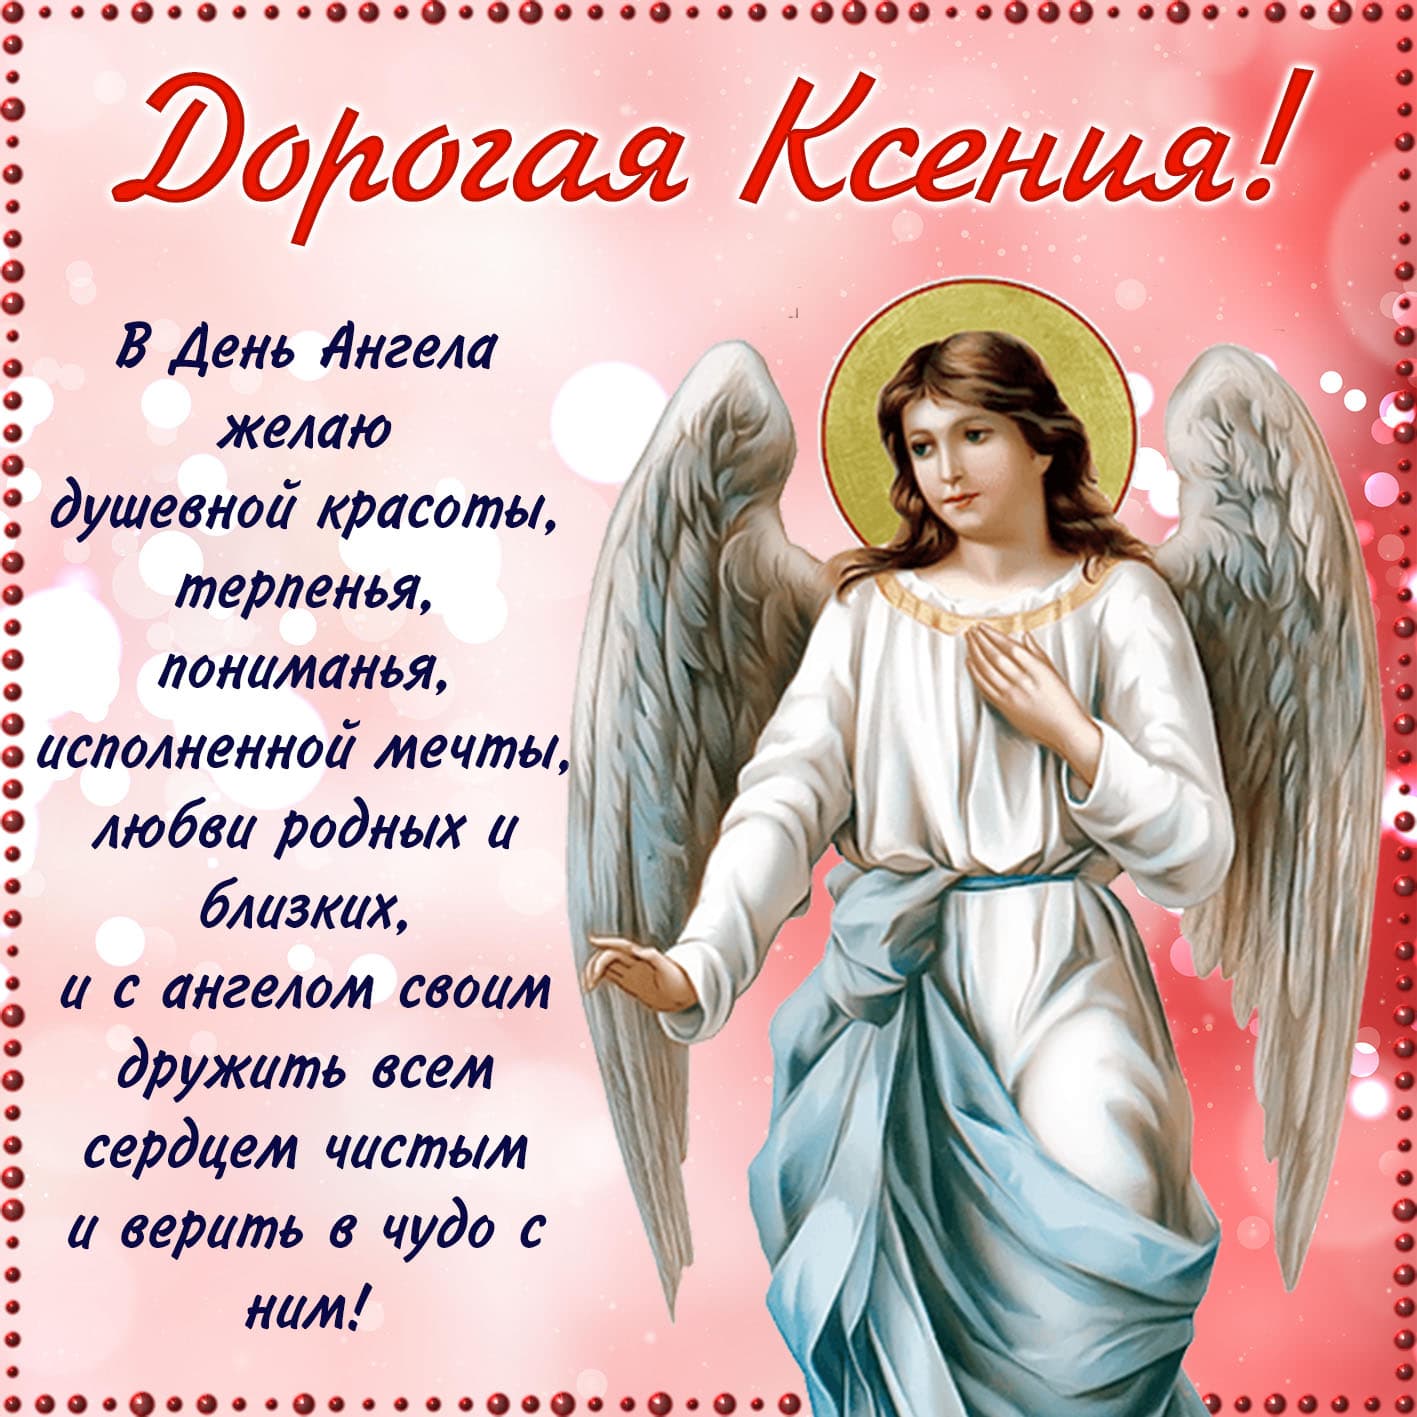 Православная открытка дорогой ксении на день ангела